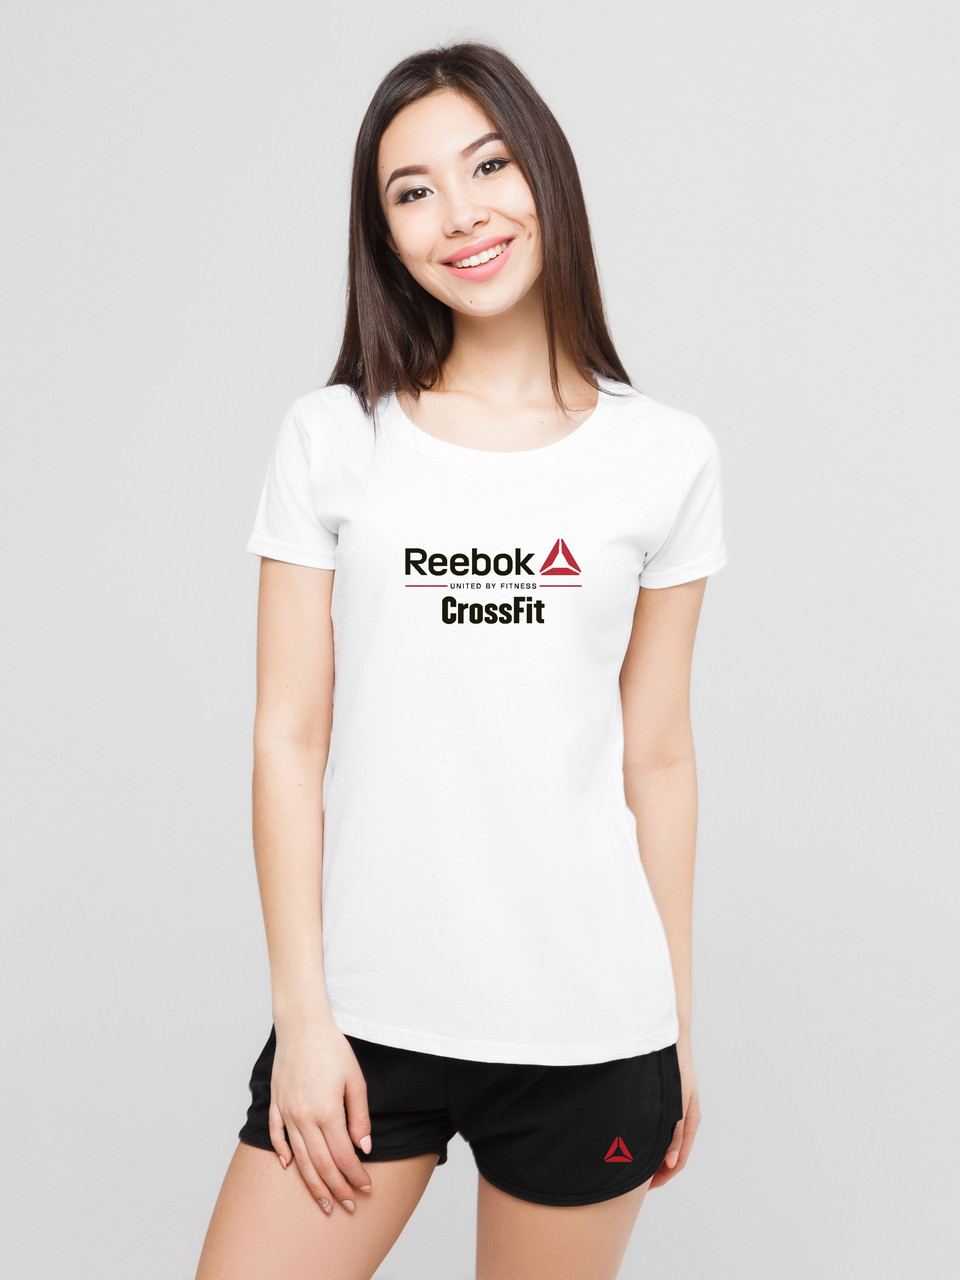 Жіночий комплект Reebok Crossfit футболка + шорти, рибок